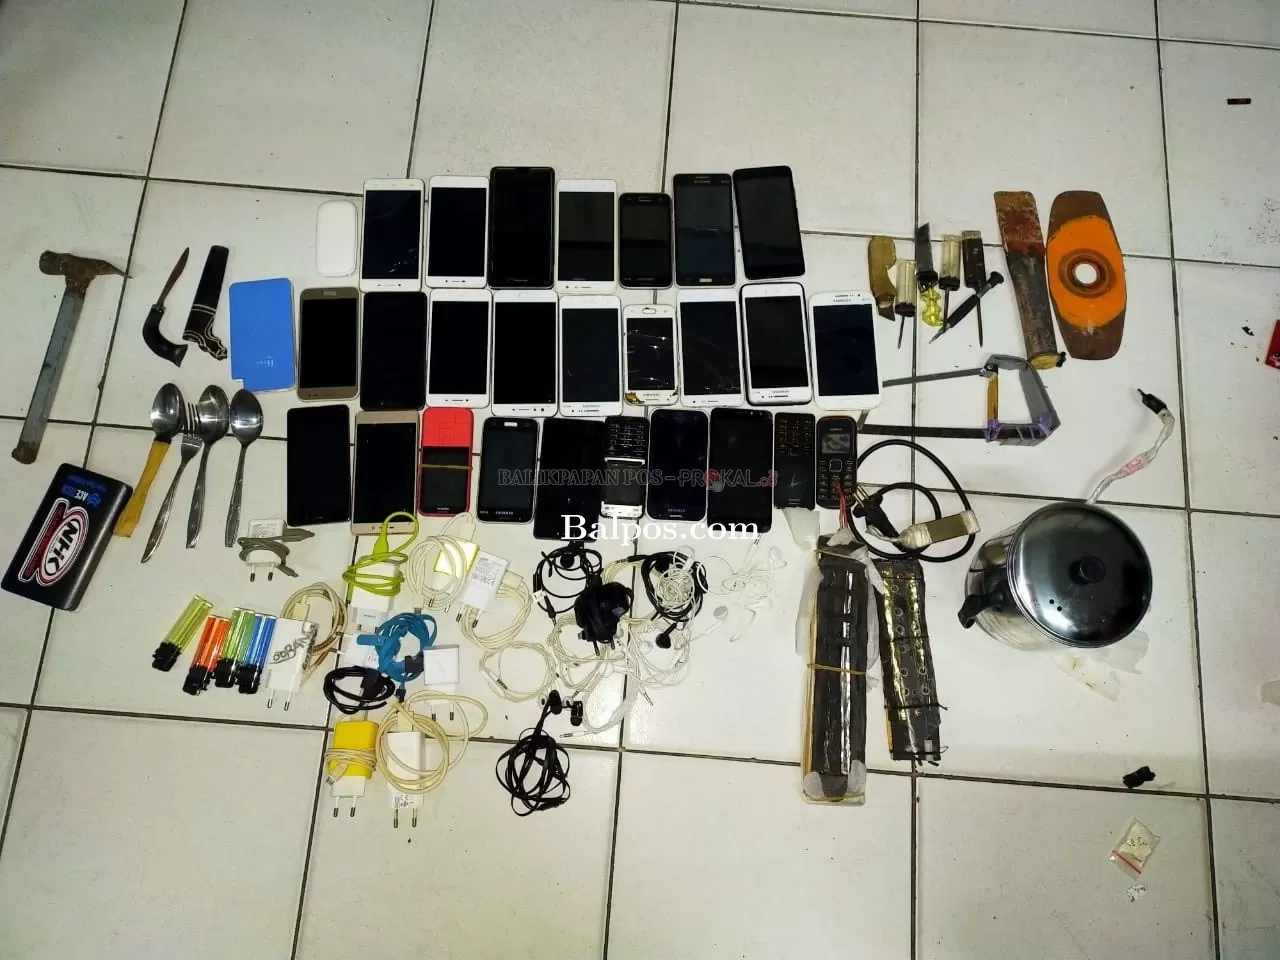 DIRAZIA: Razia yang digelar Rutan Klas II B Balikpapan berhasil menemukan ratusan barang terlarang diantaranya handphone, charger, hingga sajam.